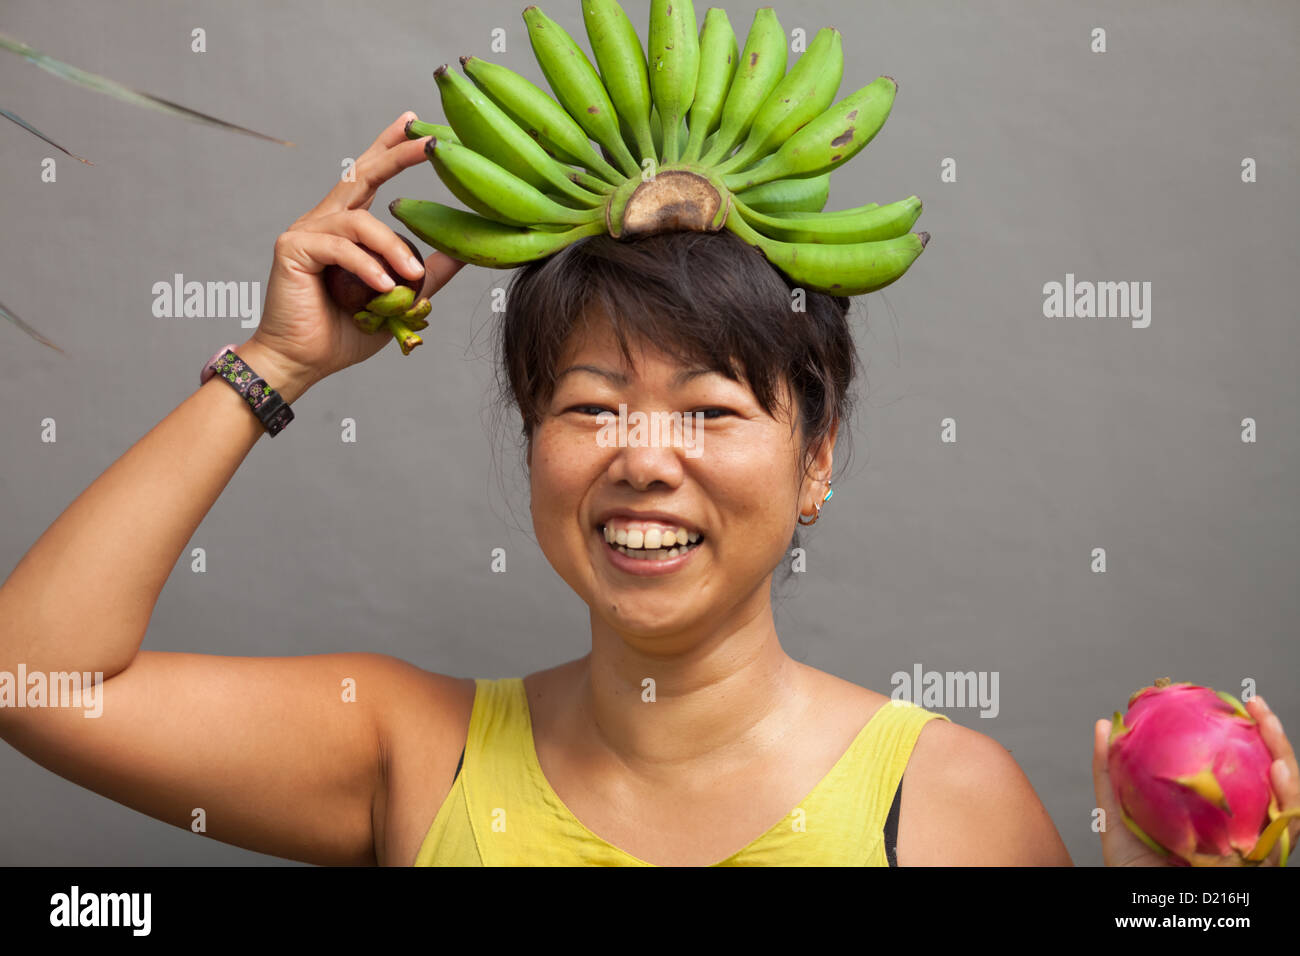 Heureux et en santé femme avec couronne de bananes sur la tête Photo Stock  - Alamy